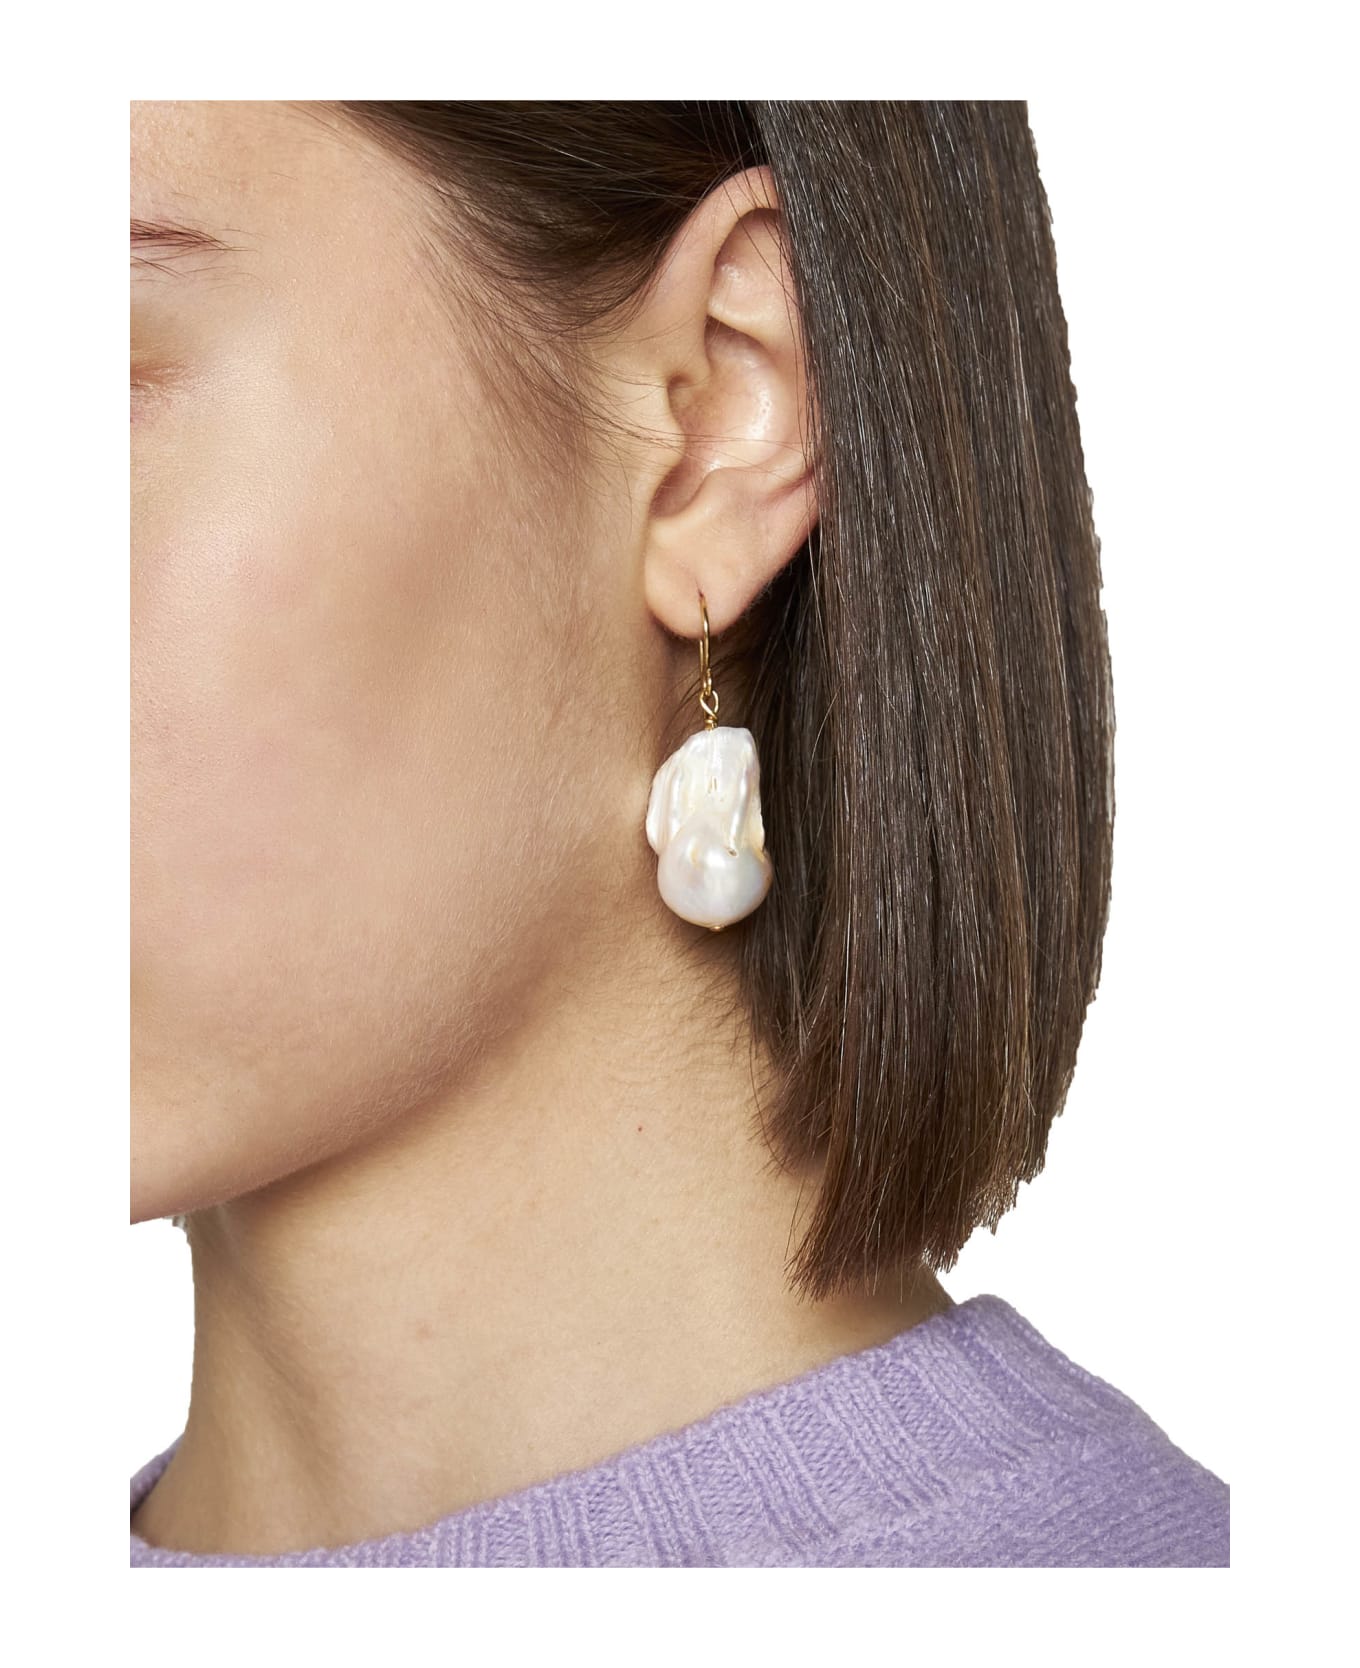 Jil Sander Earrings - Gold/white